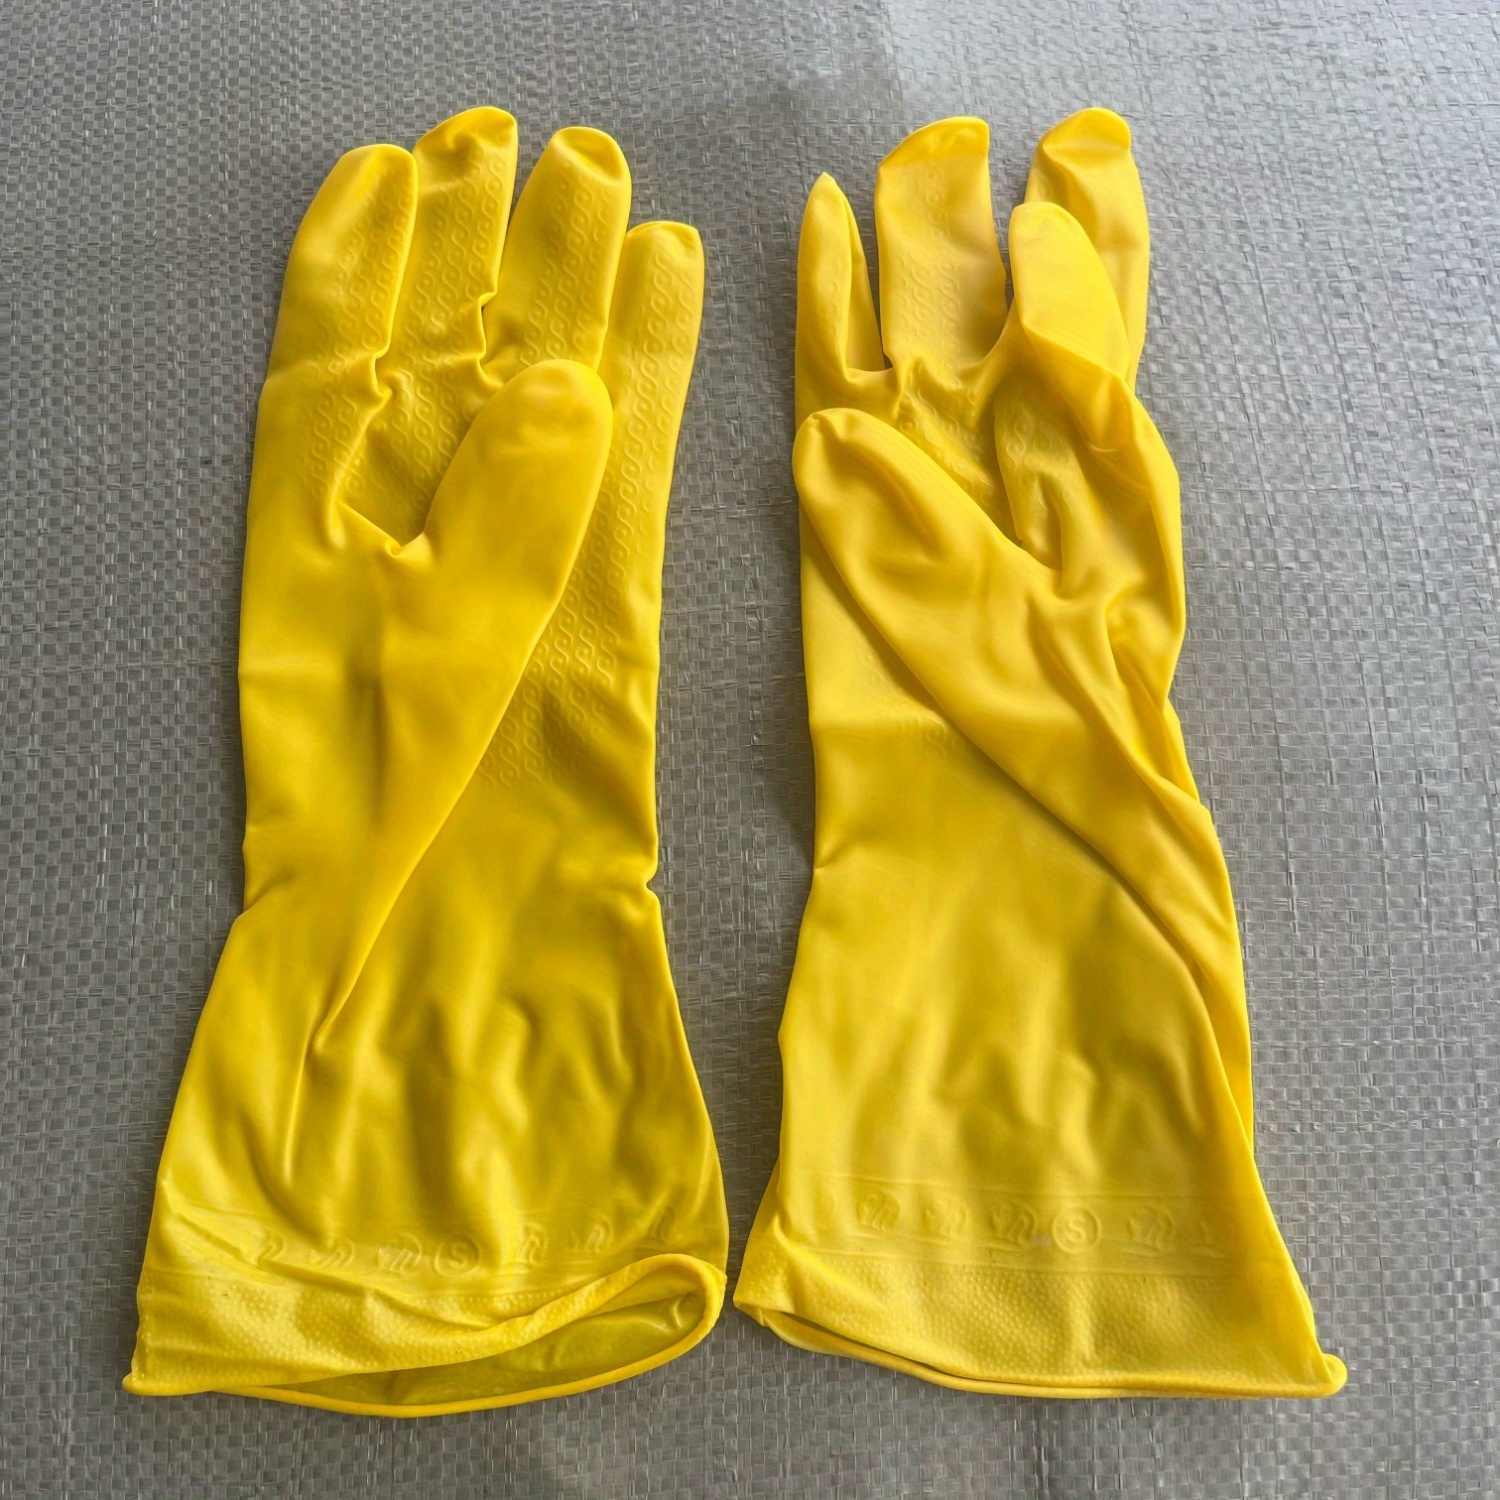 Comprar Guantes impermeables para lavar platos, guantes de látex de goma  para lavandería, nuevos guantes de limpieza para el hogar